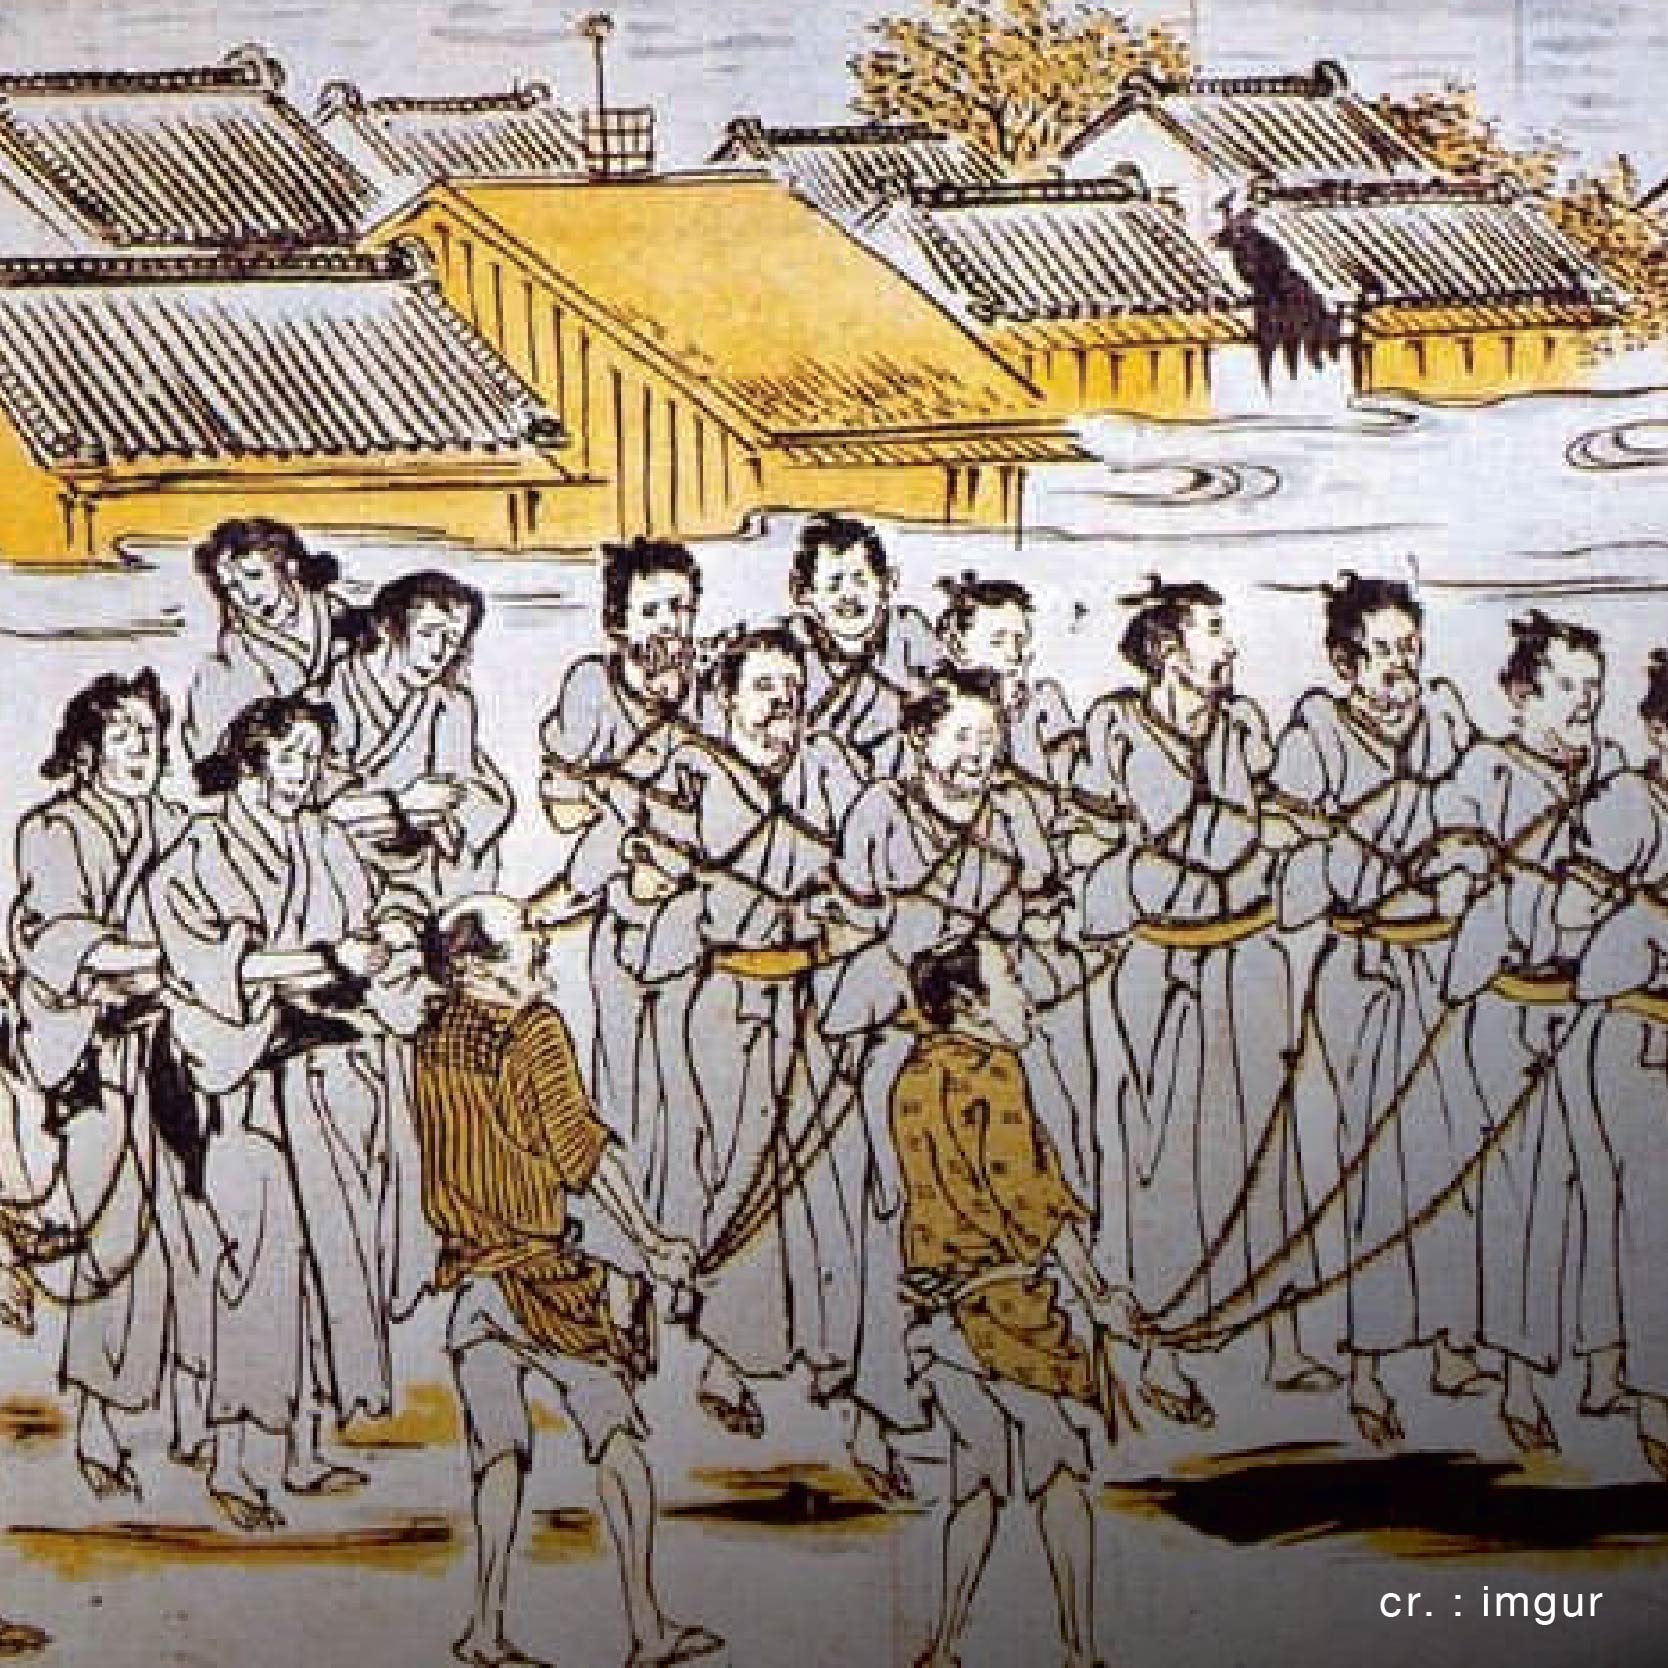 จุดเริ่มต้นของการพันธนาการ “Shibari(ชิบาริ)” หรือที่เรียกกันในสมัยก่อนนามว่า “คินบาคุ”